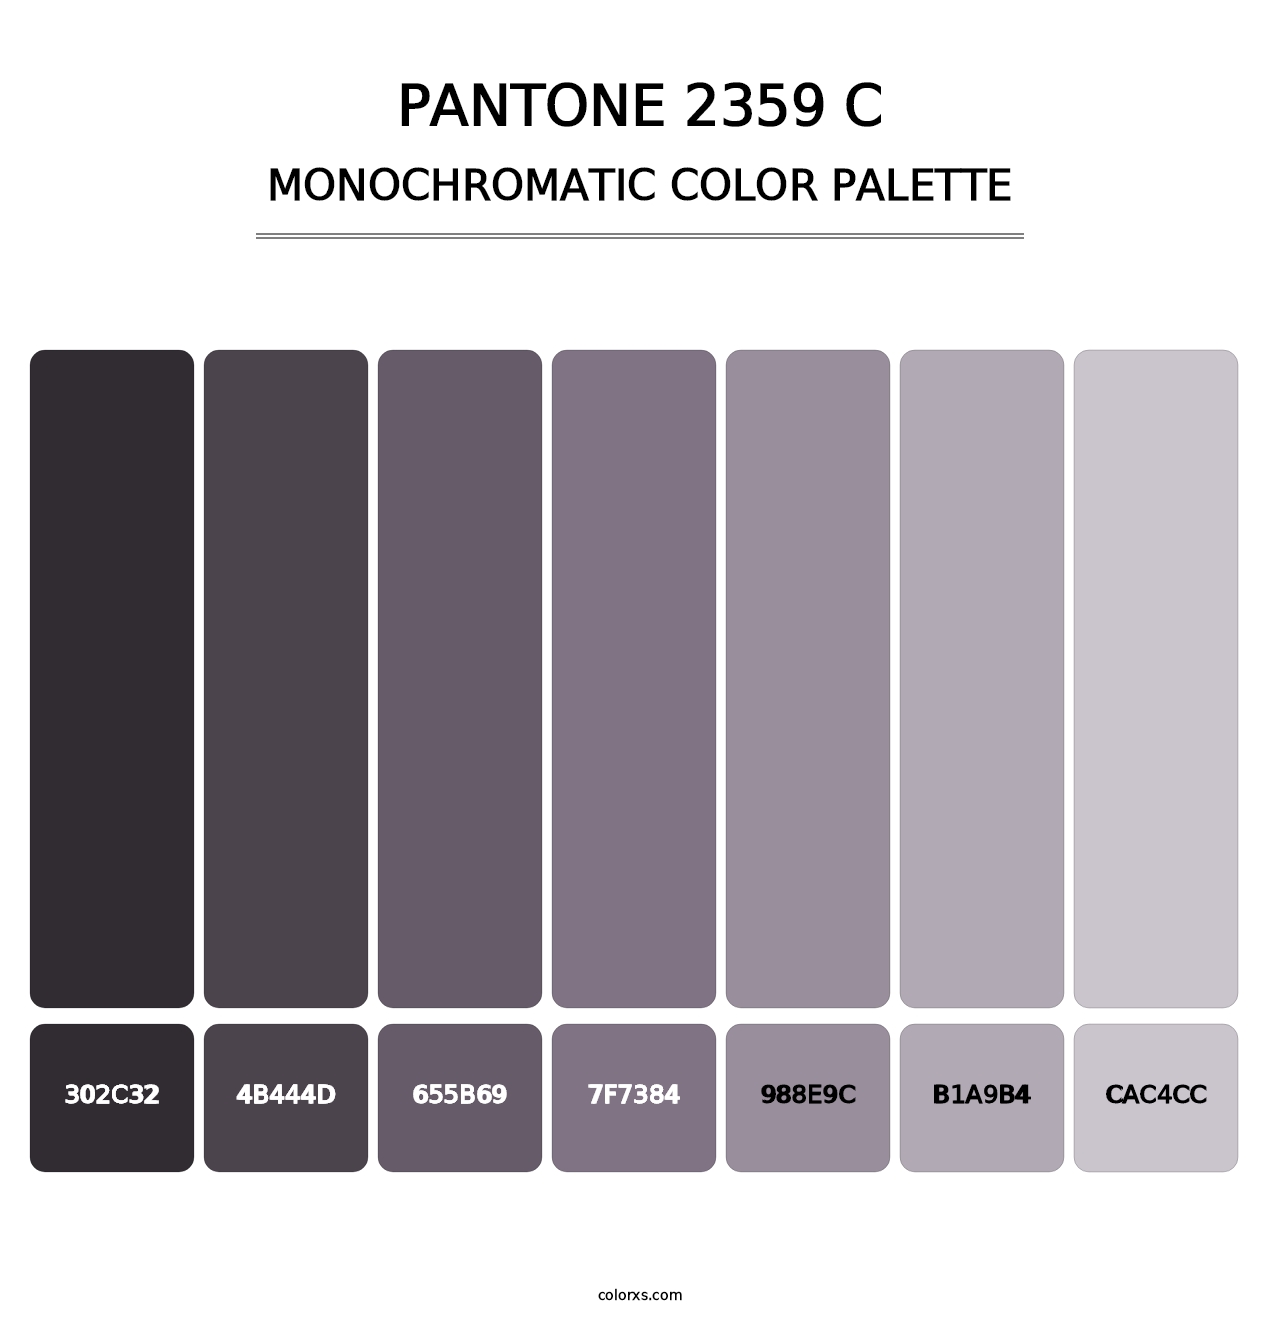 PANTONE 2359 C - Monochromatic Color Palette